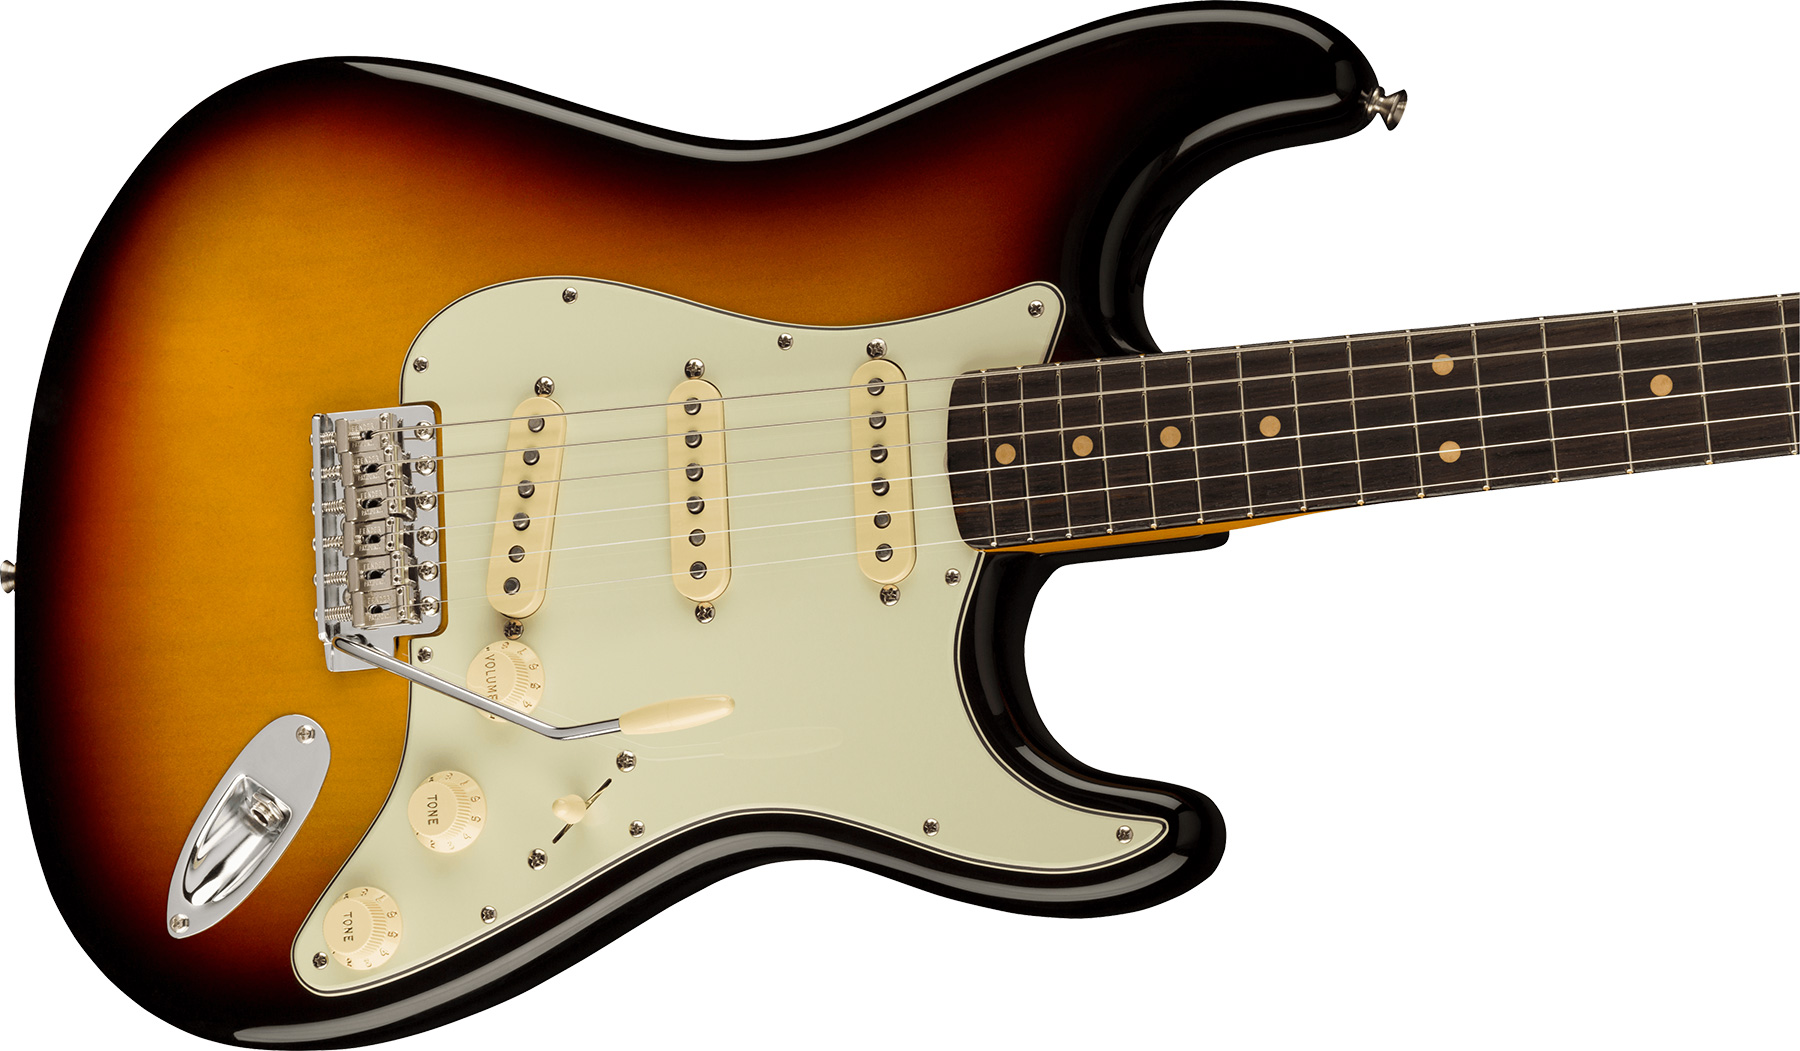 Fender Strat 1961 American Vintage Ii Usa 3s Trem Rw - 3-color Sunburst - Str shape electric guitar - Variation 2